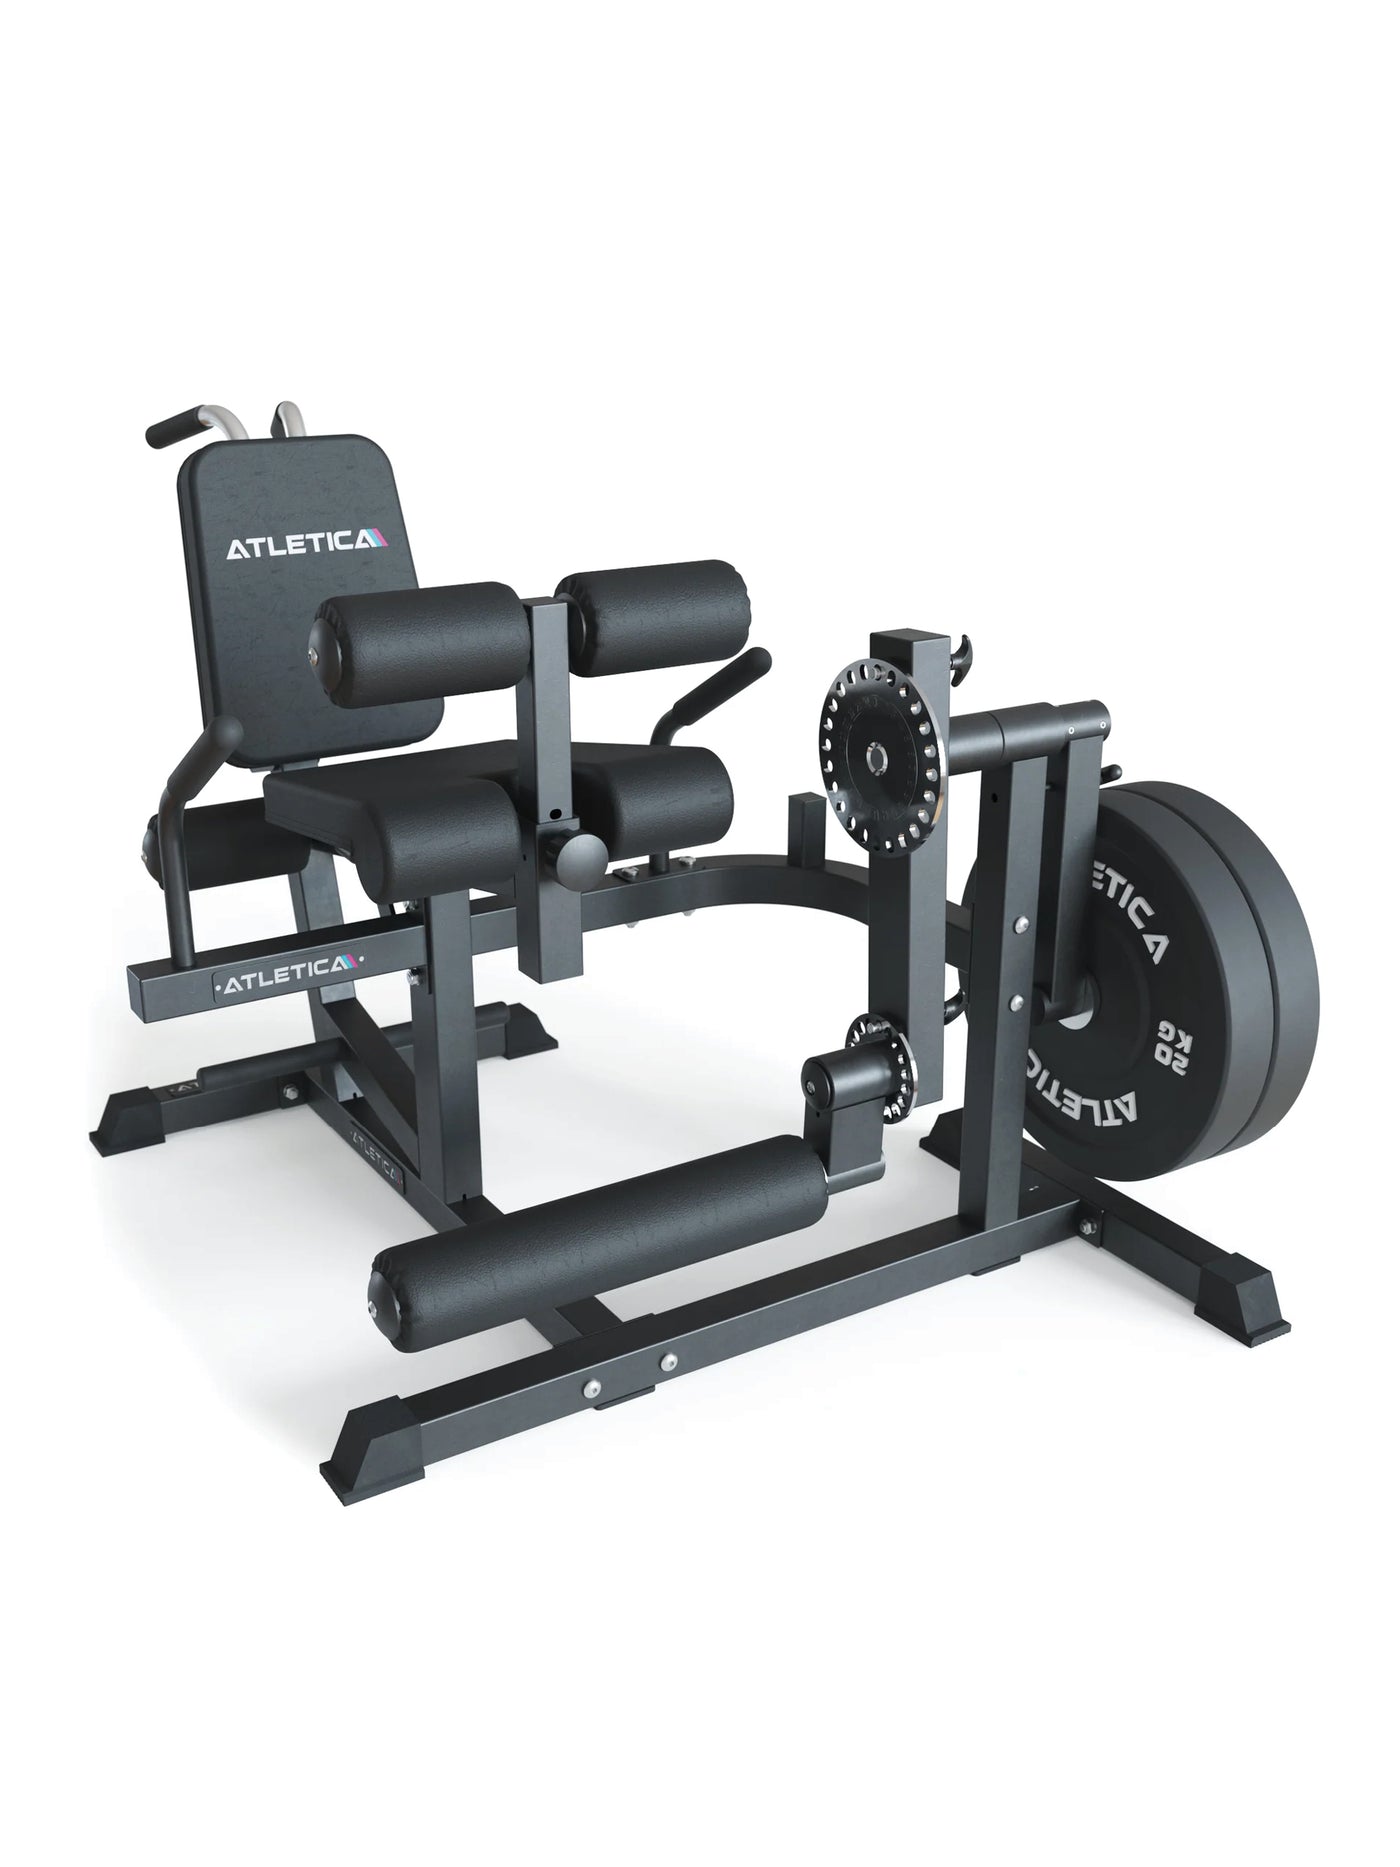 Kraftgerät Fullbody Multitrainer Leg Curl – Multifunktion für Beinstrecker, Bauch- und Rückenübungen, Plate Loaded, enorme Traglast bis 350kg